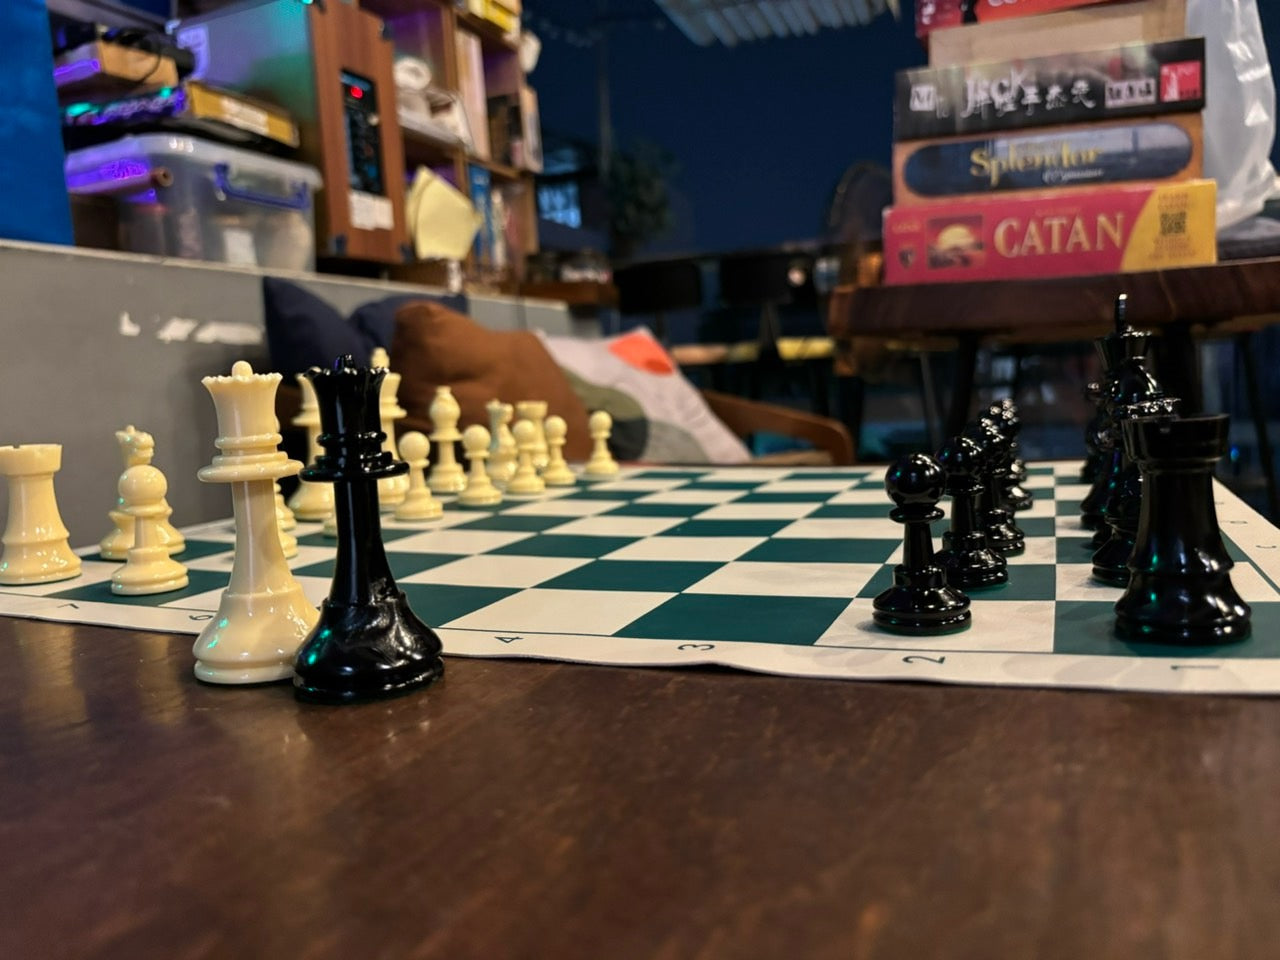 国际象棋♟️和扑克♣️俱乐部